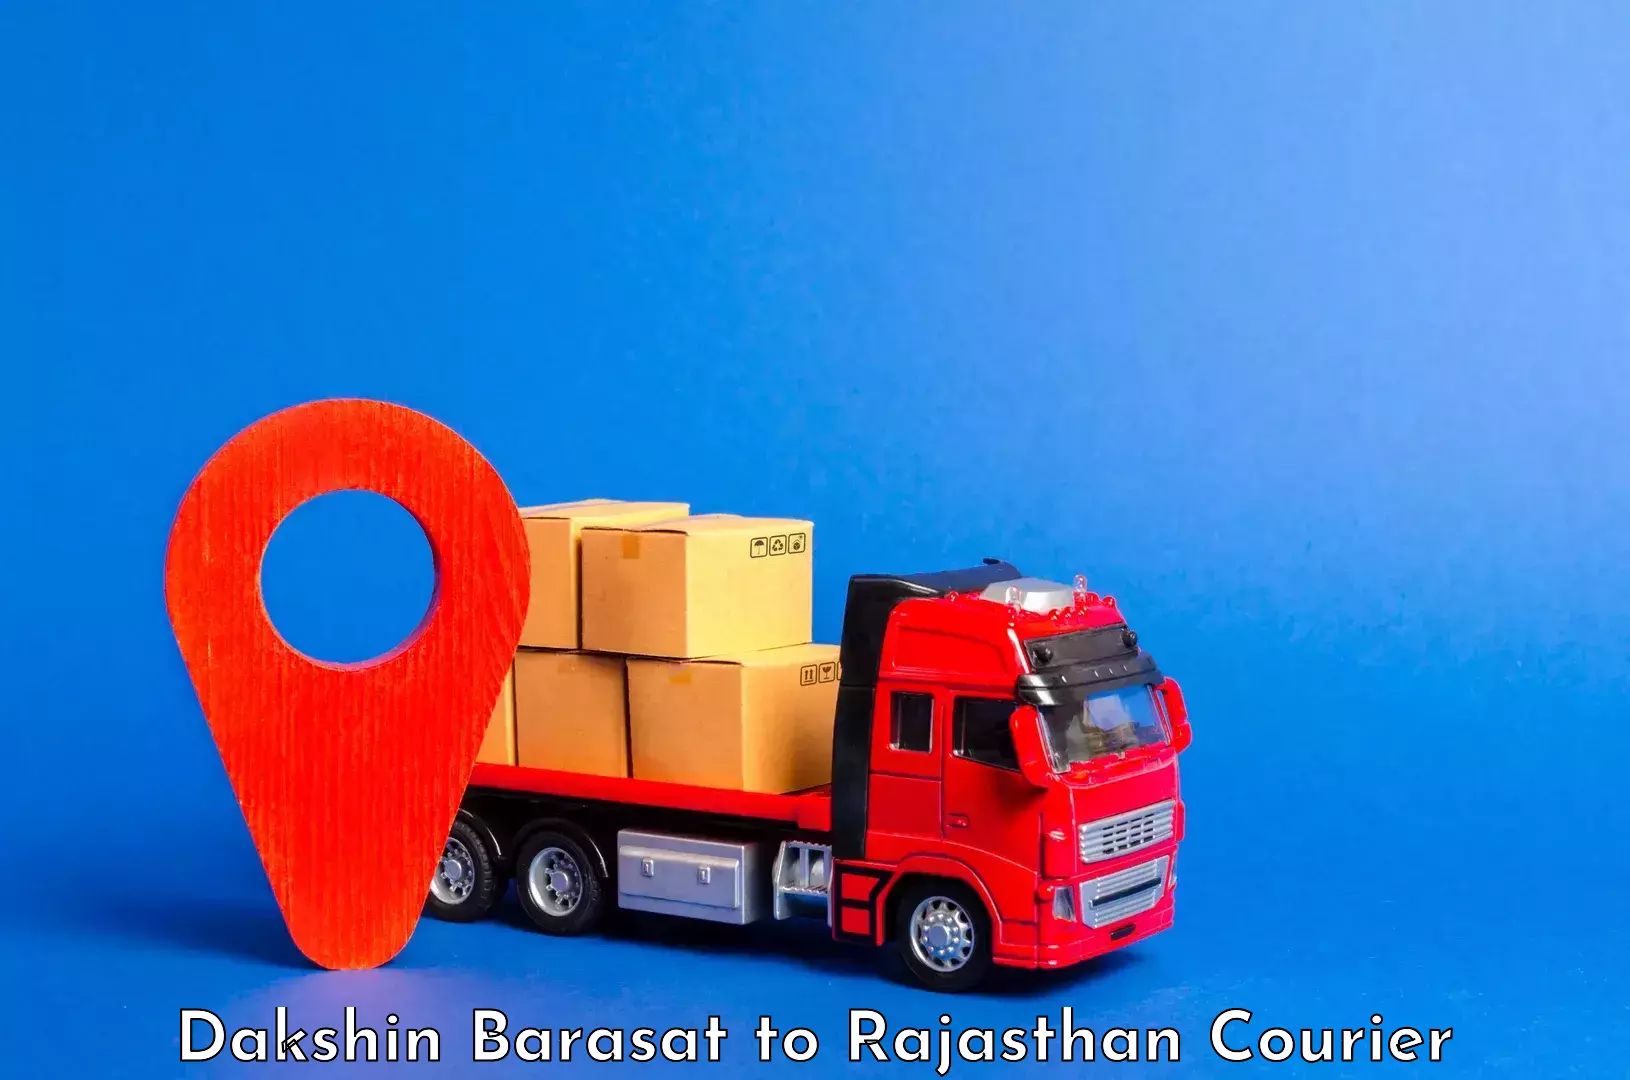 Luggage transport service Dakshin Barasat to Rajasthan